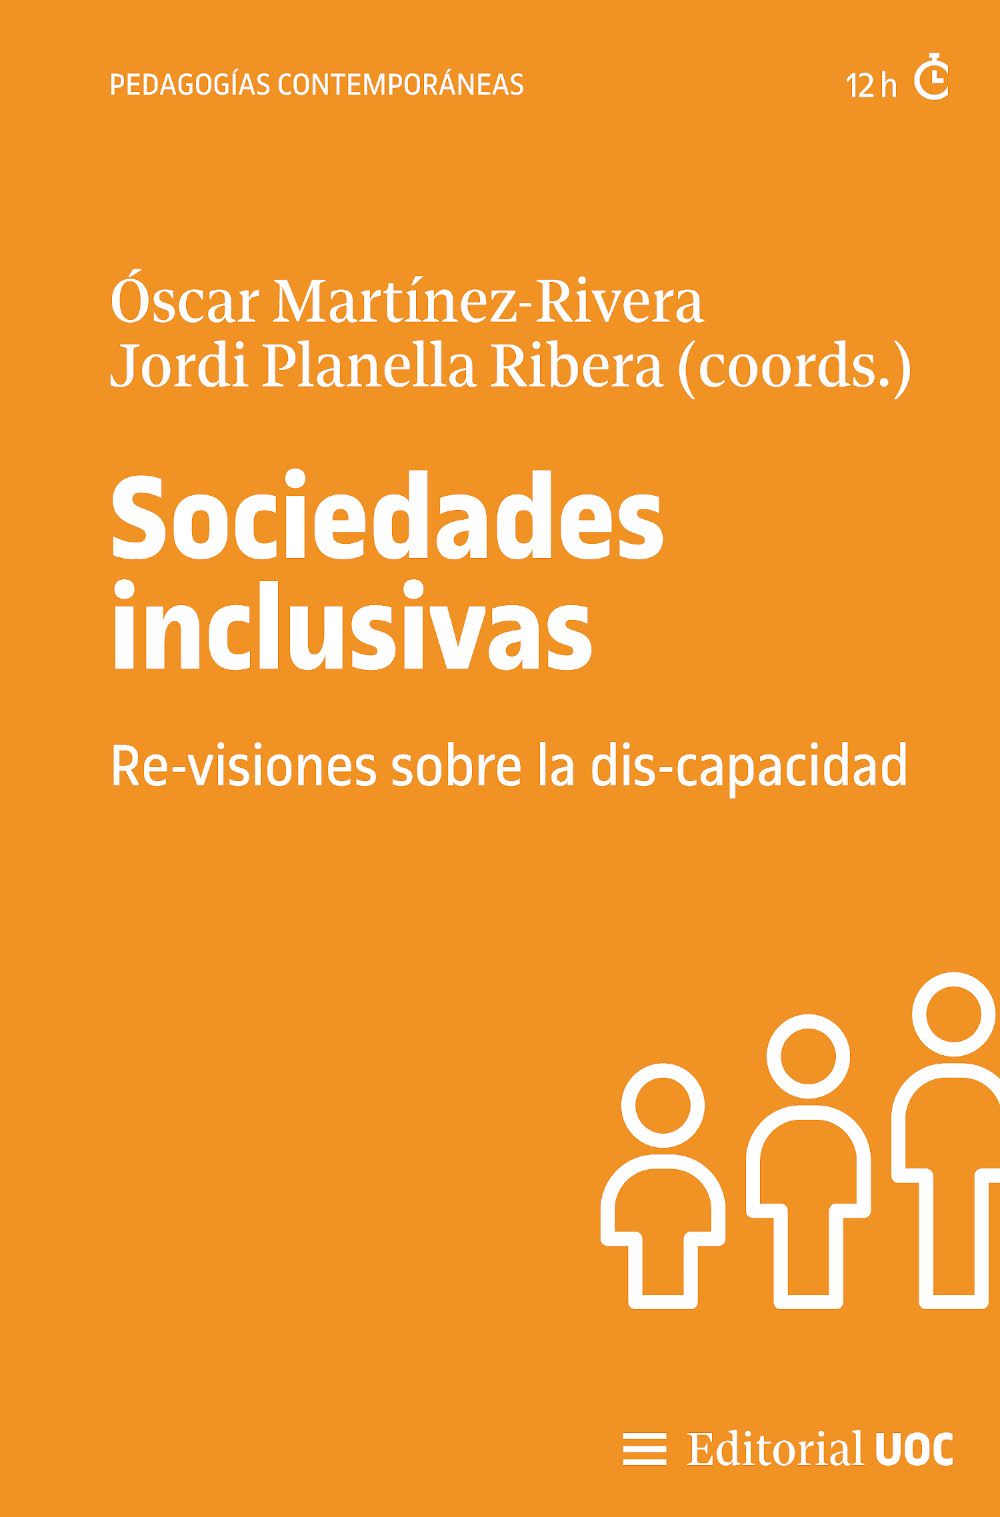 Imagen de portada del libro Sociedades inclusivas